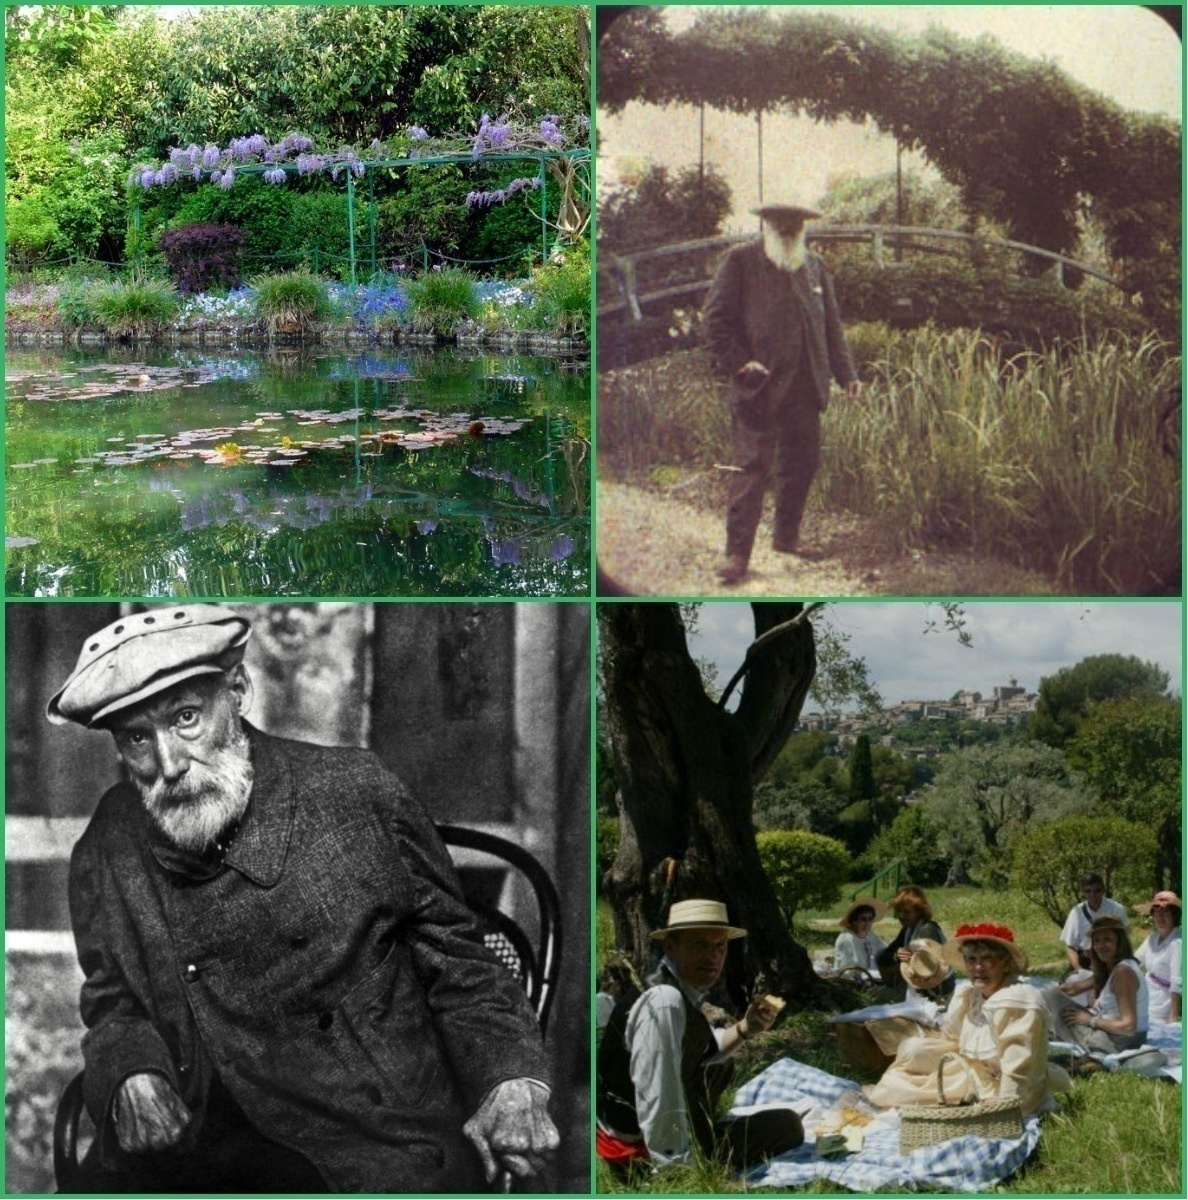 Vive la France! Vive Impressionism! Renoir and Monet at their villas (Part 1)